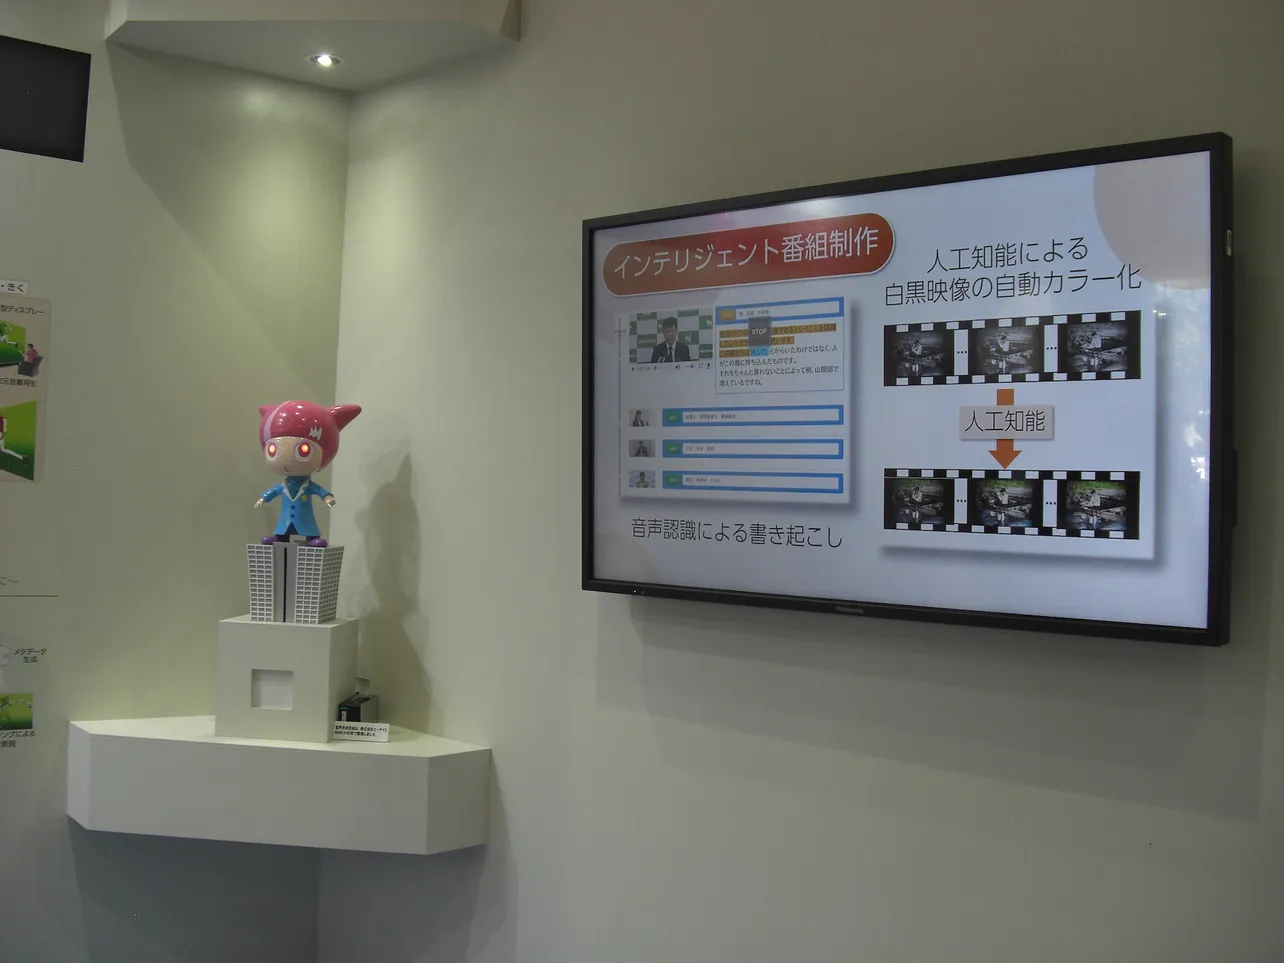 音声合成技術を搭載したNHK技研のマスコットキャラクター「ラボちゃん」が「NHK技研3か年計画」を説明